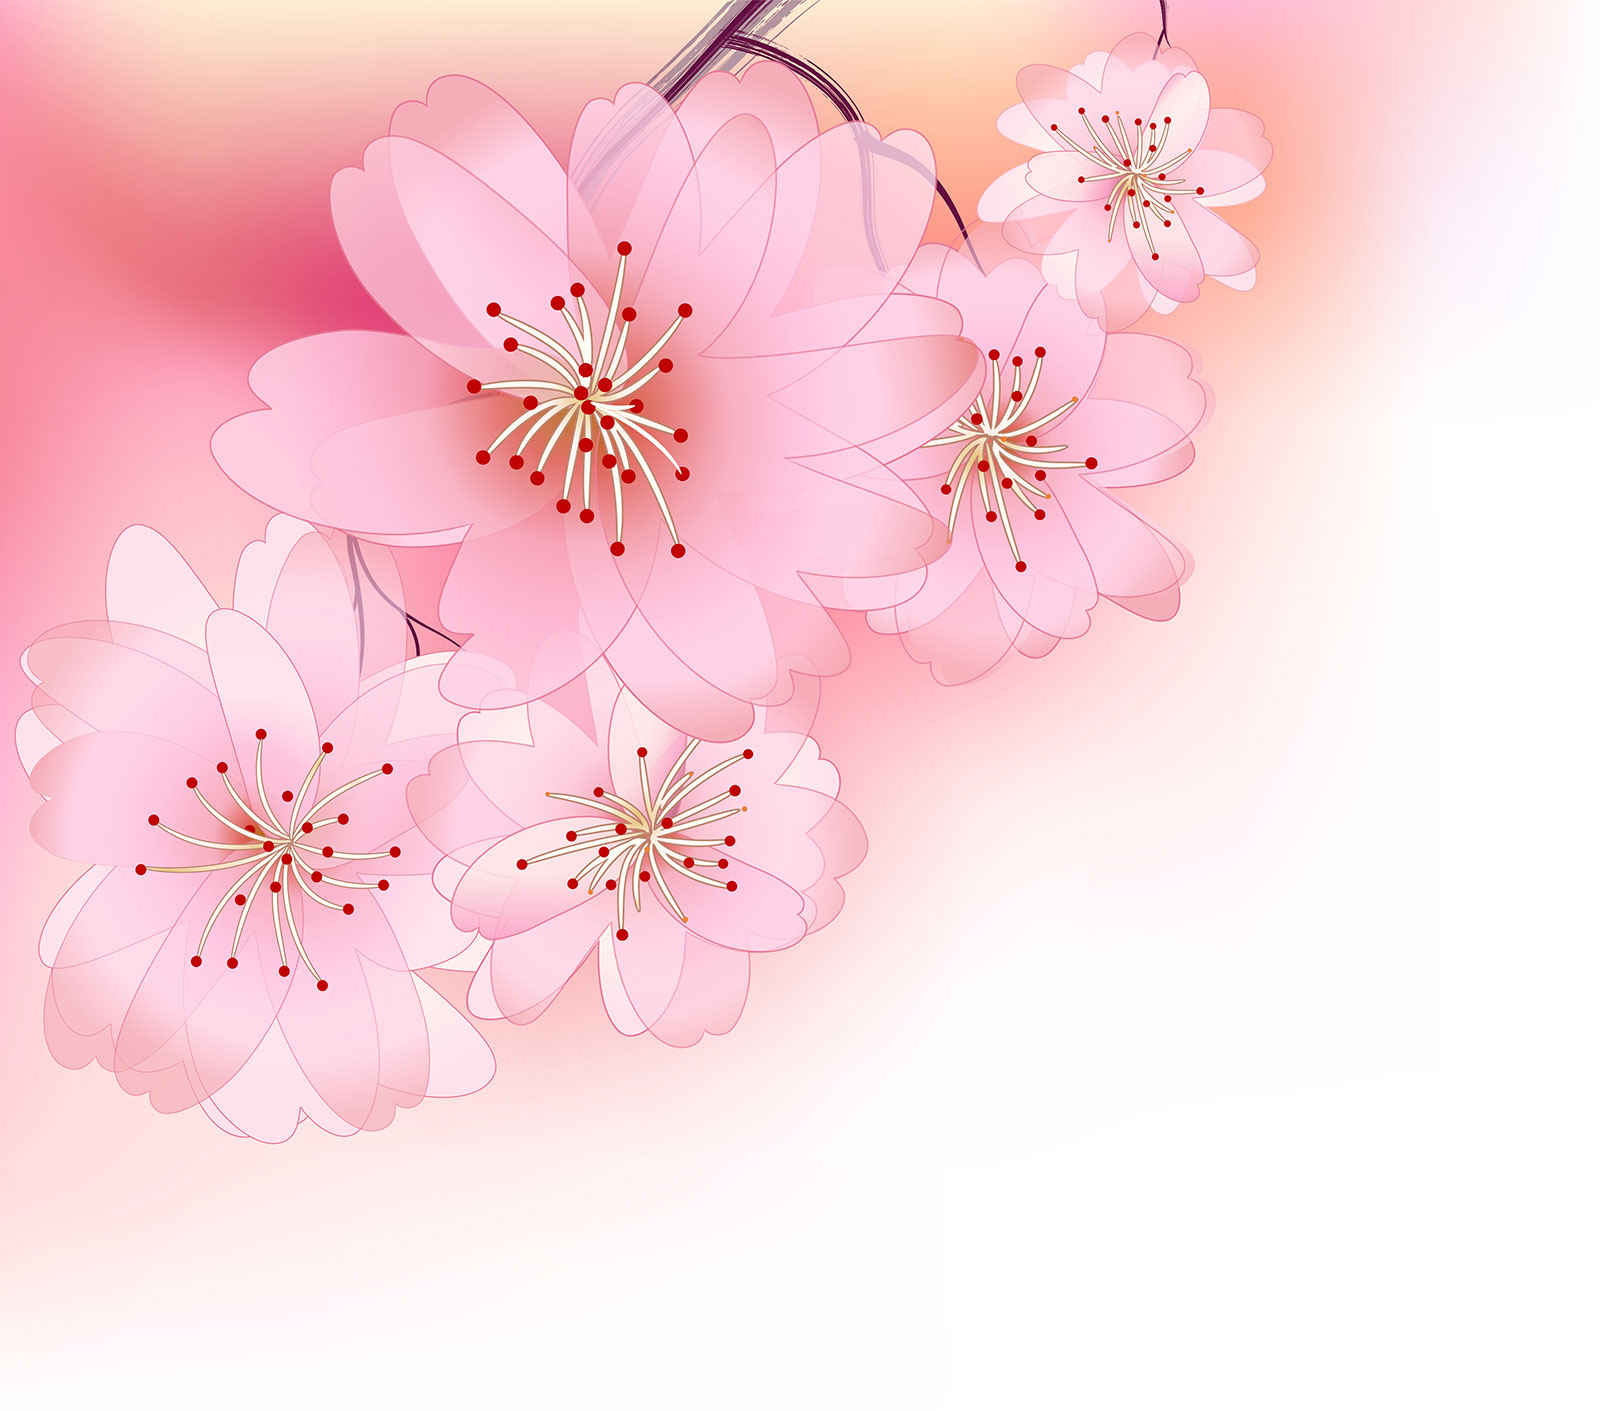 さくら 桜 のイラスト 画像no 062 壁紙 ポップなさくら 無料のフリー素材集 百花繚乱